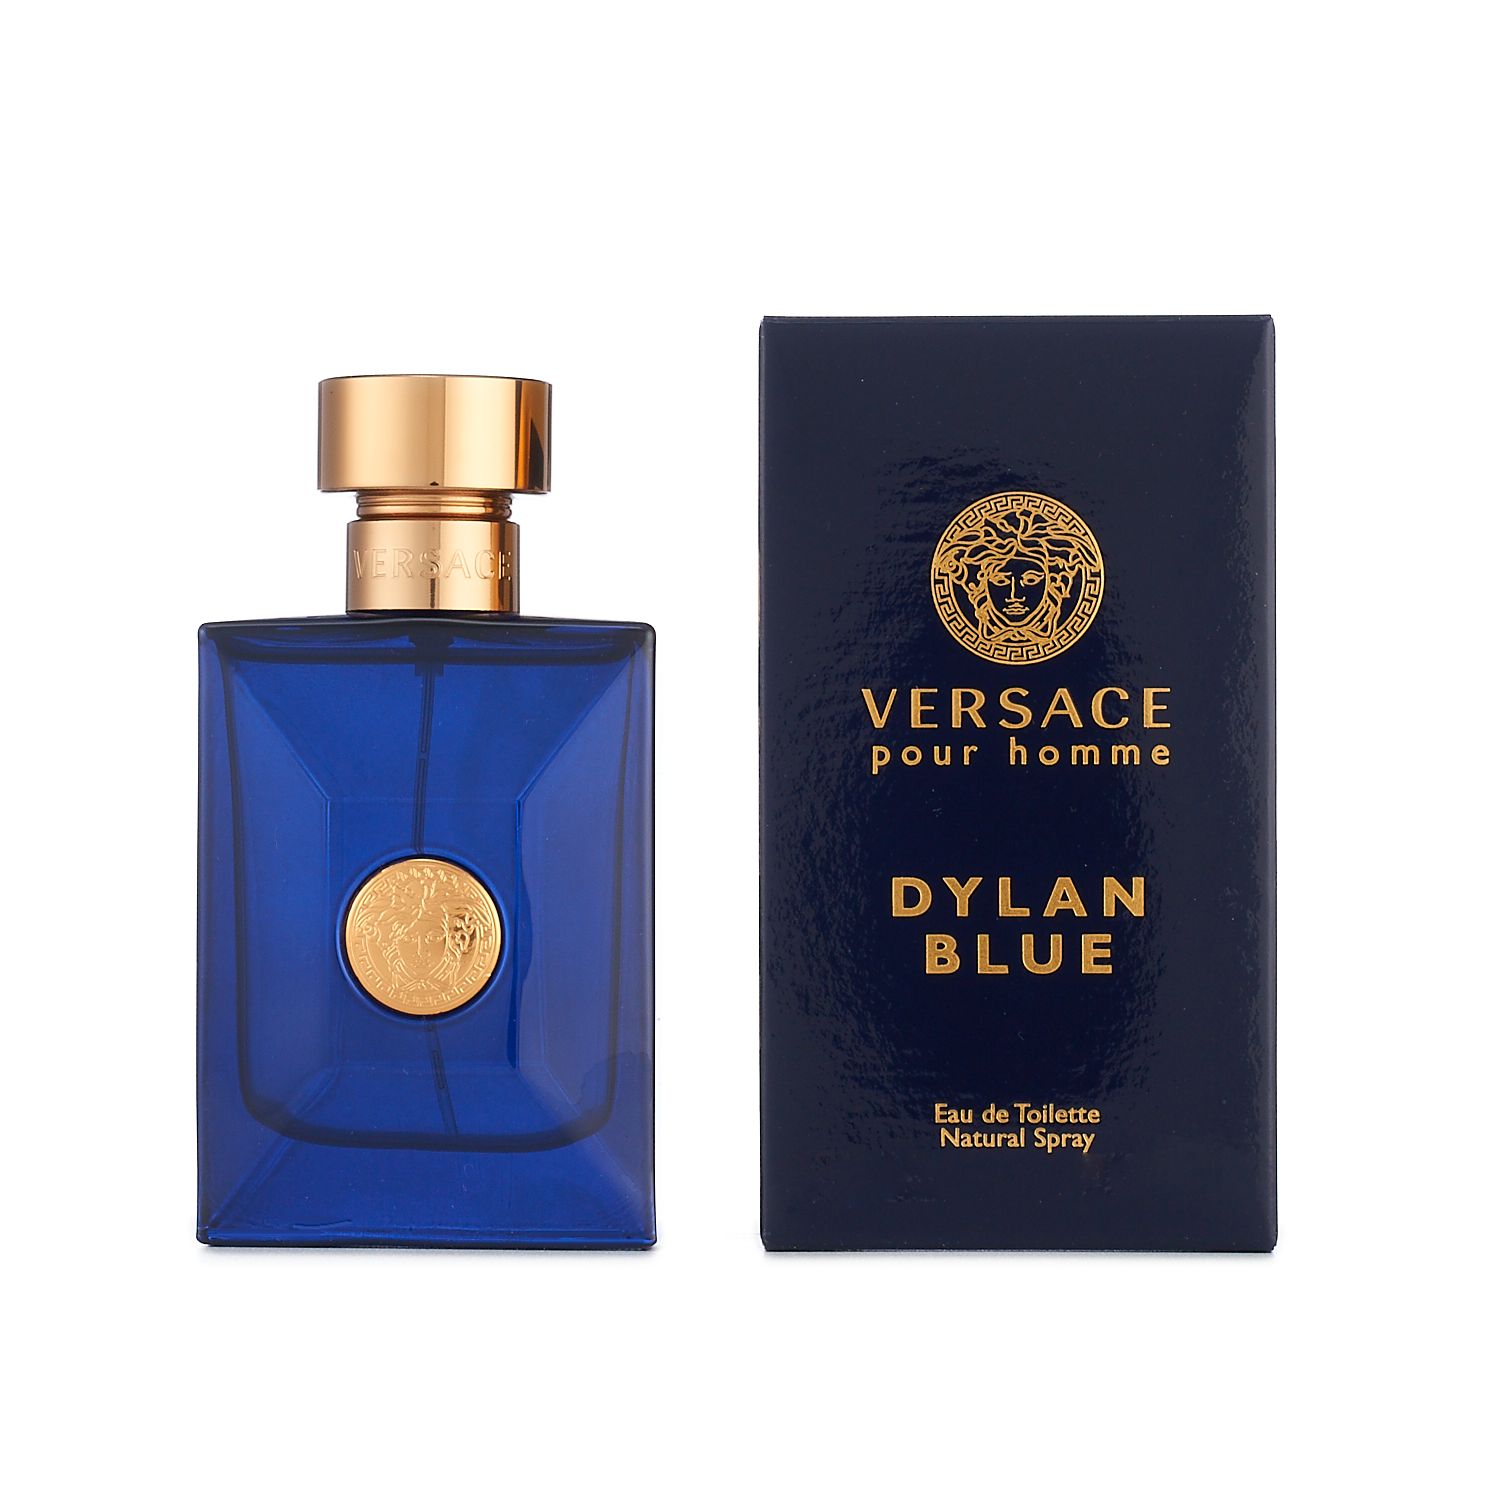 Versace Dylan Blue Men's Cologne - Eau 